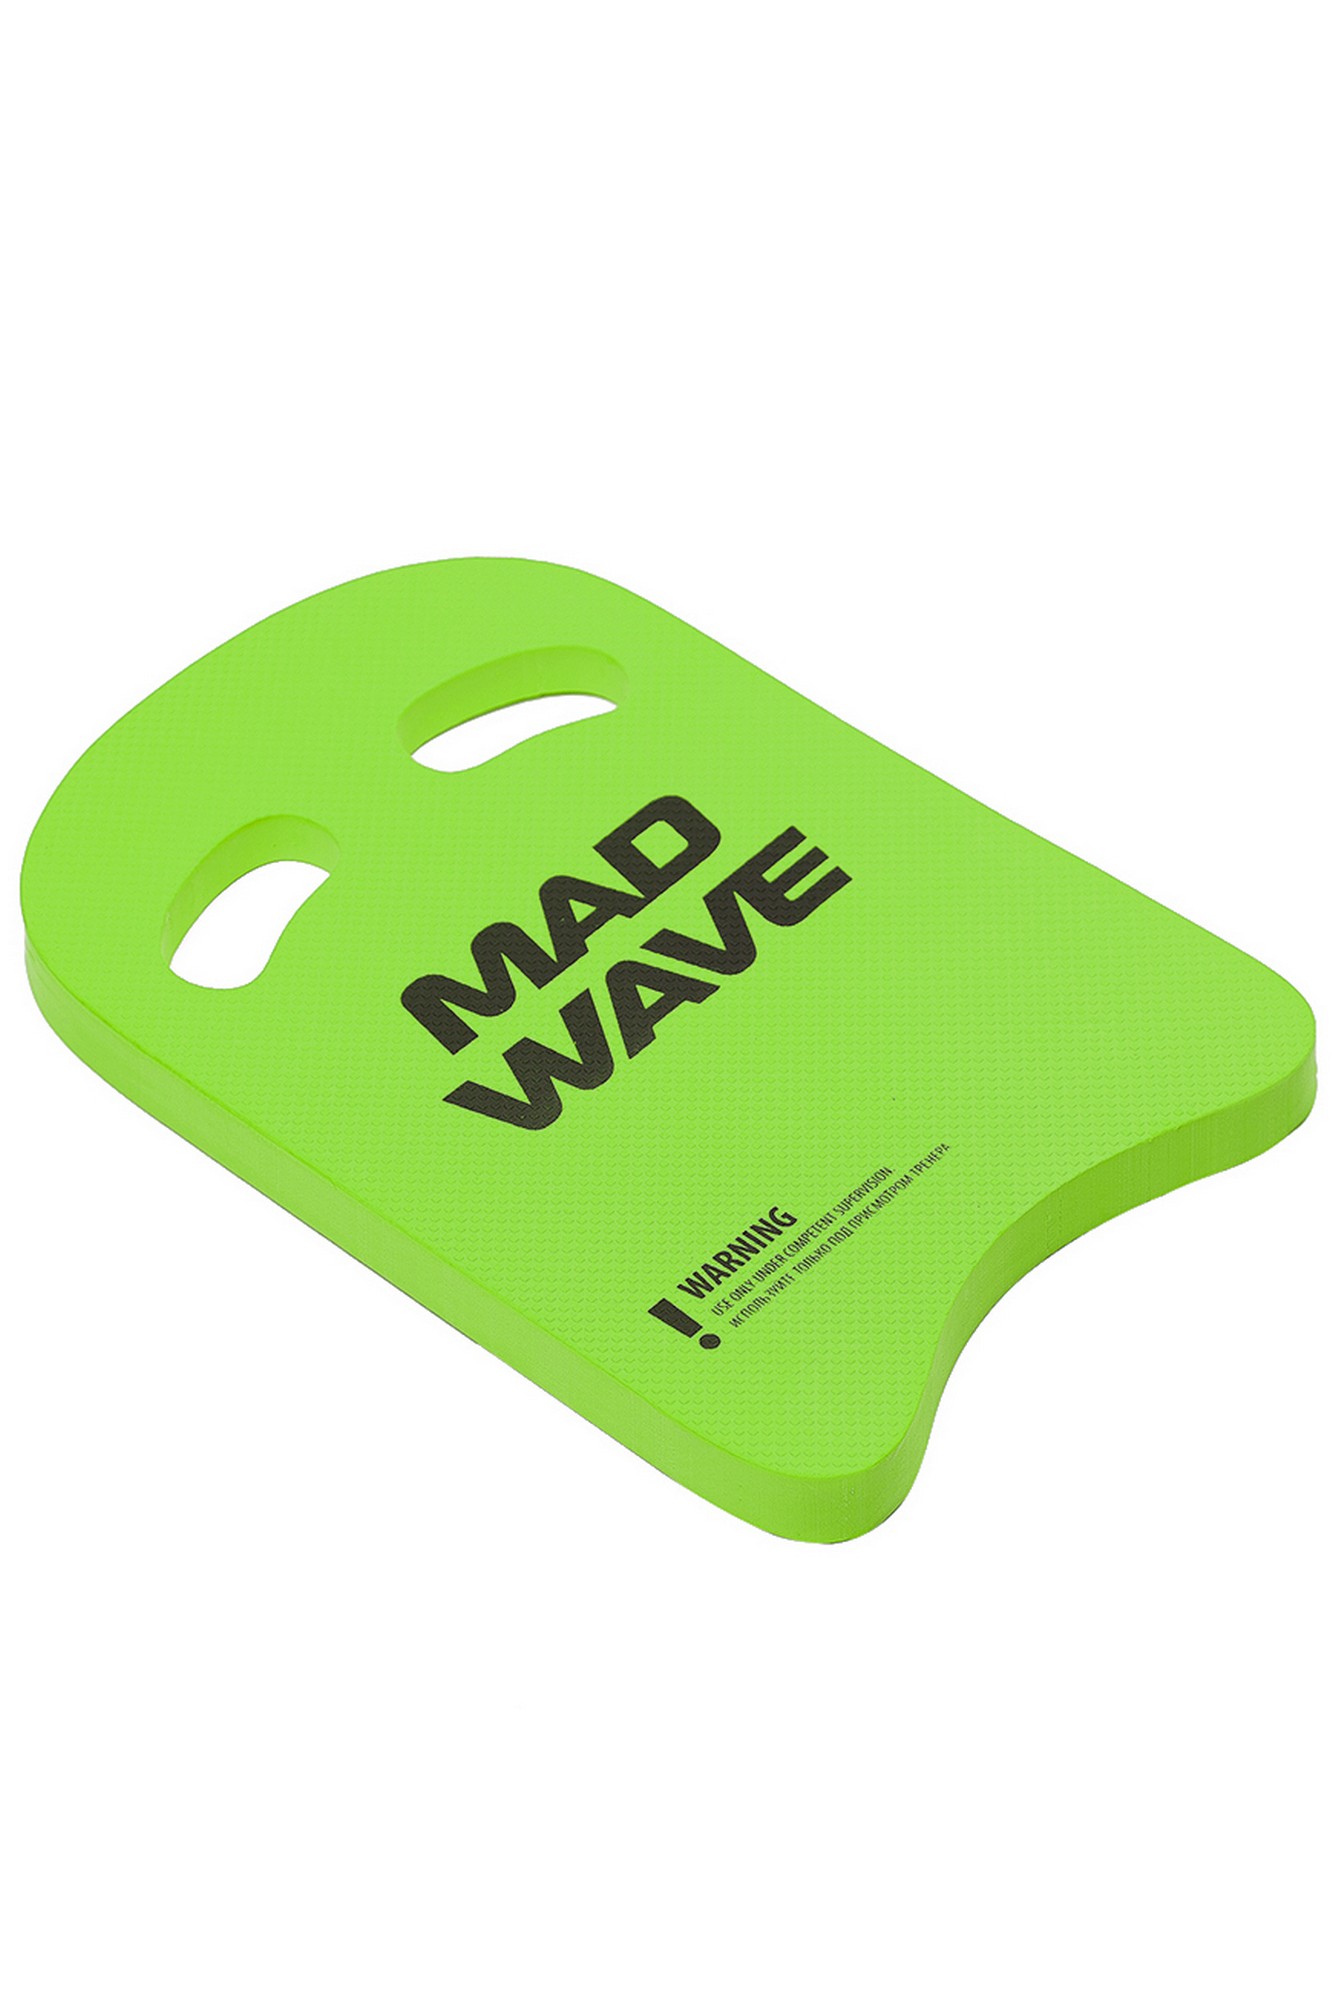    Mad Wave Kickboard Light 35 M0721 03 0 10W